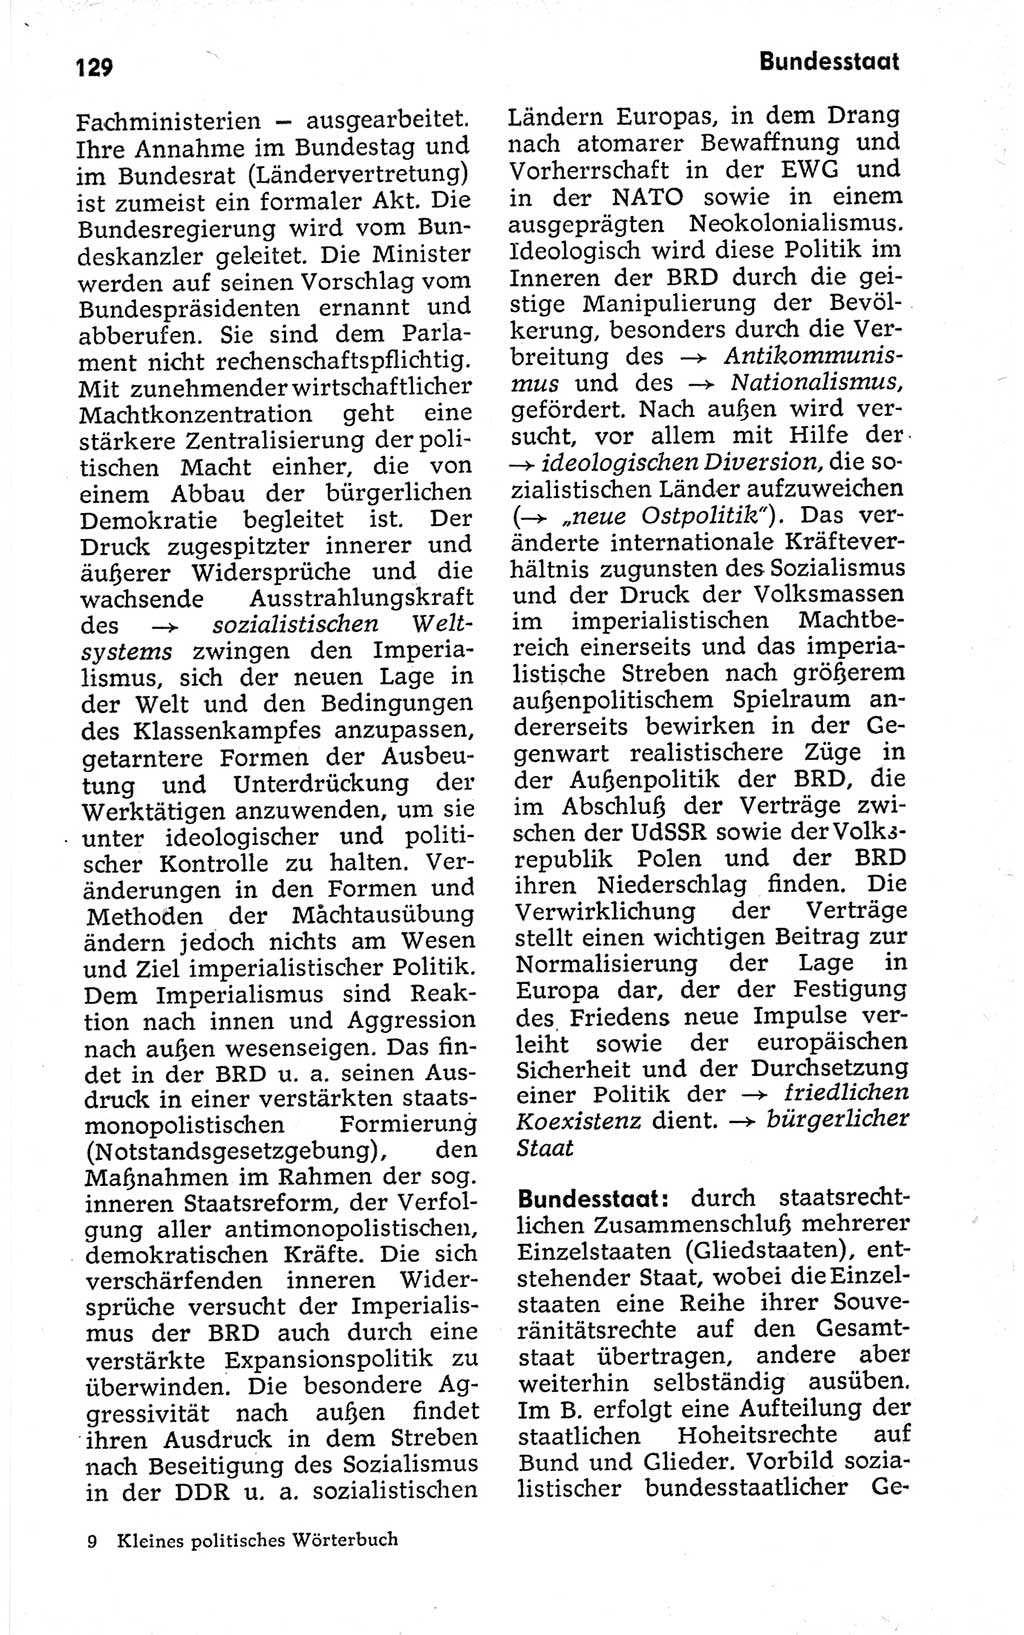 Kleines politisches Wörterbuch [Deutsche Demokratische Republik (DDR)] 1973, Seite 129 (Kl. pol. Wb. DDR 1973, S. 129)